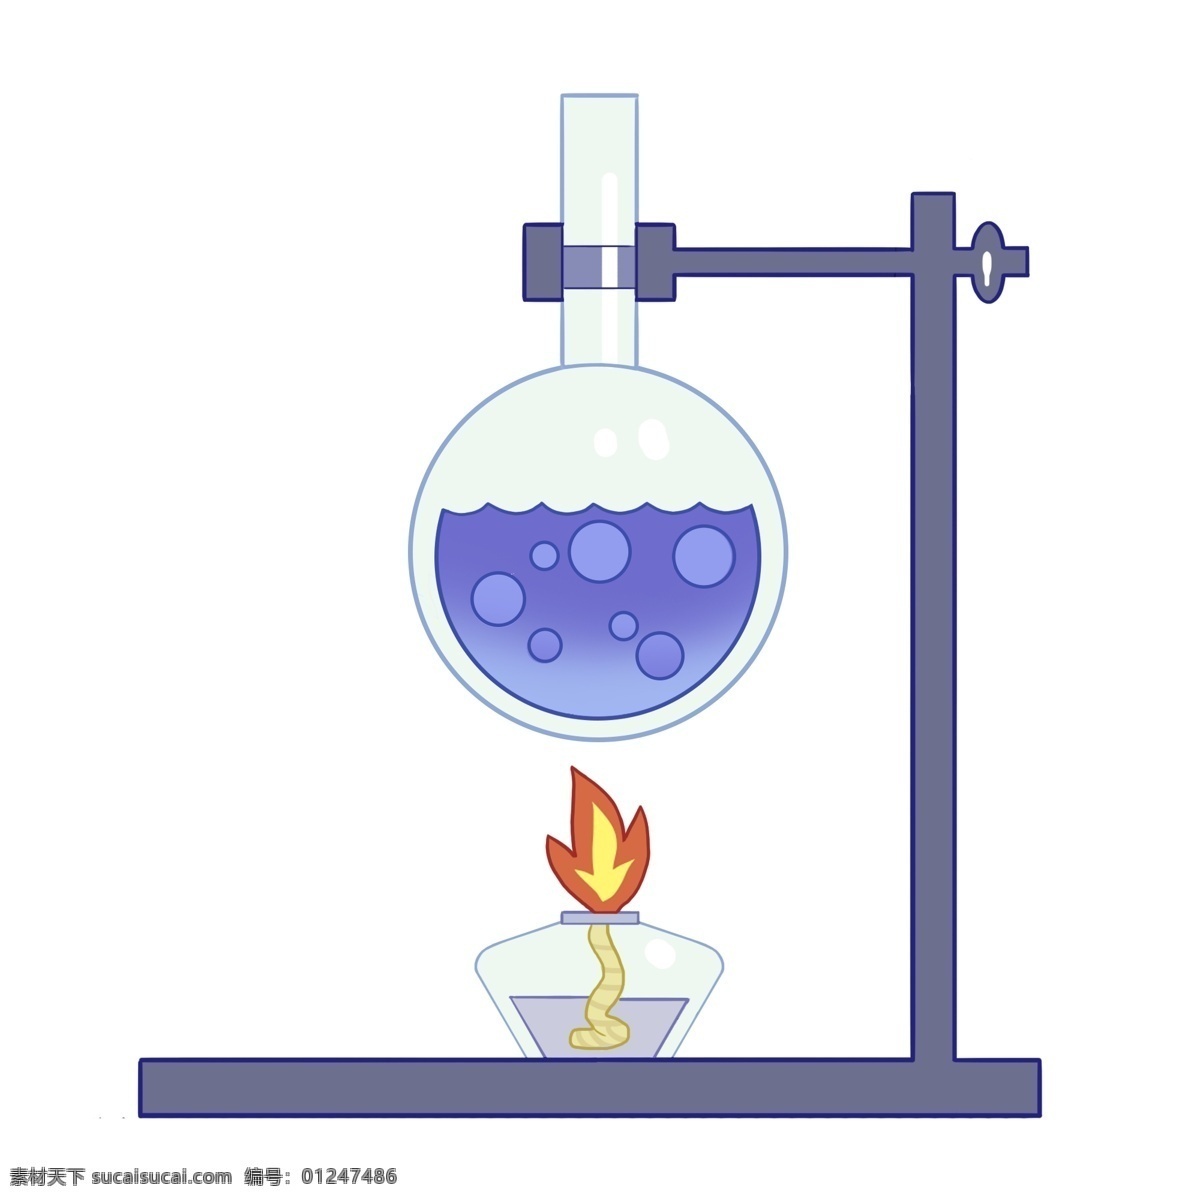 卡通化 学 实验台 插画 化学实验台 圆形的烧杯 酒精灯 卡通烧杯插画 化学实验 实验用具 蓝色液体